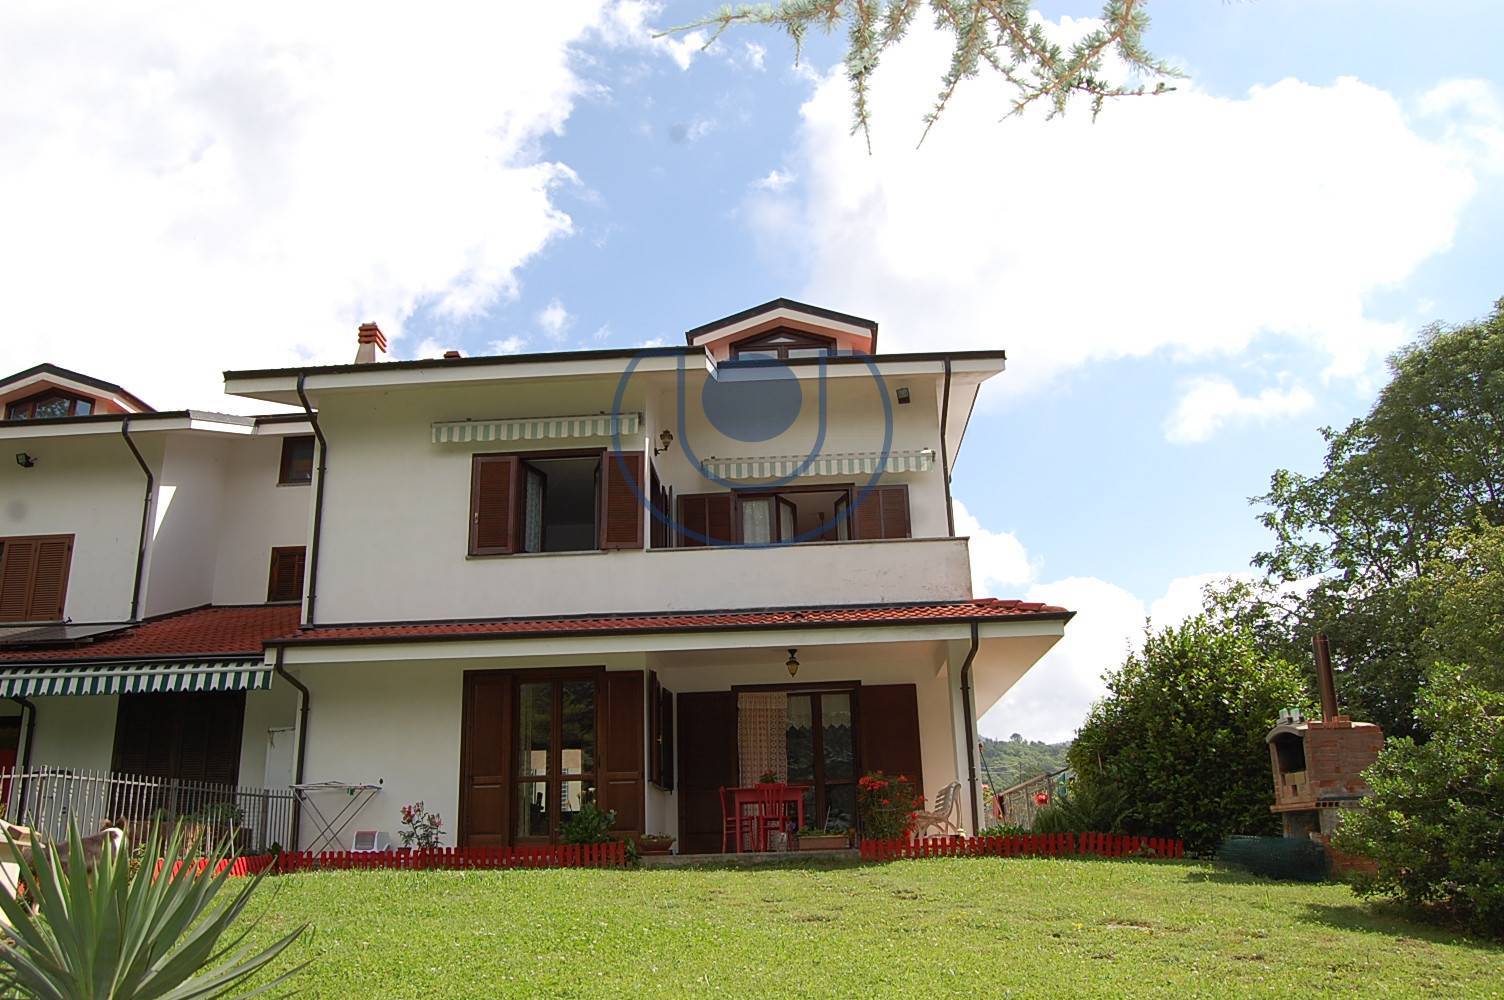 Villa in vendita a Coazze, 8 locali, zona Località: Freinetto, prezzo € 280.000 | PortaleAgenzieImmobiliari.it